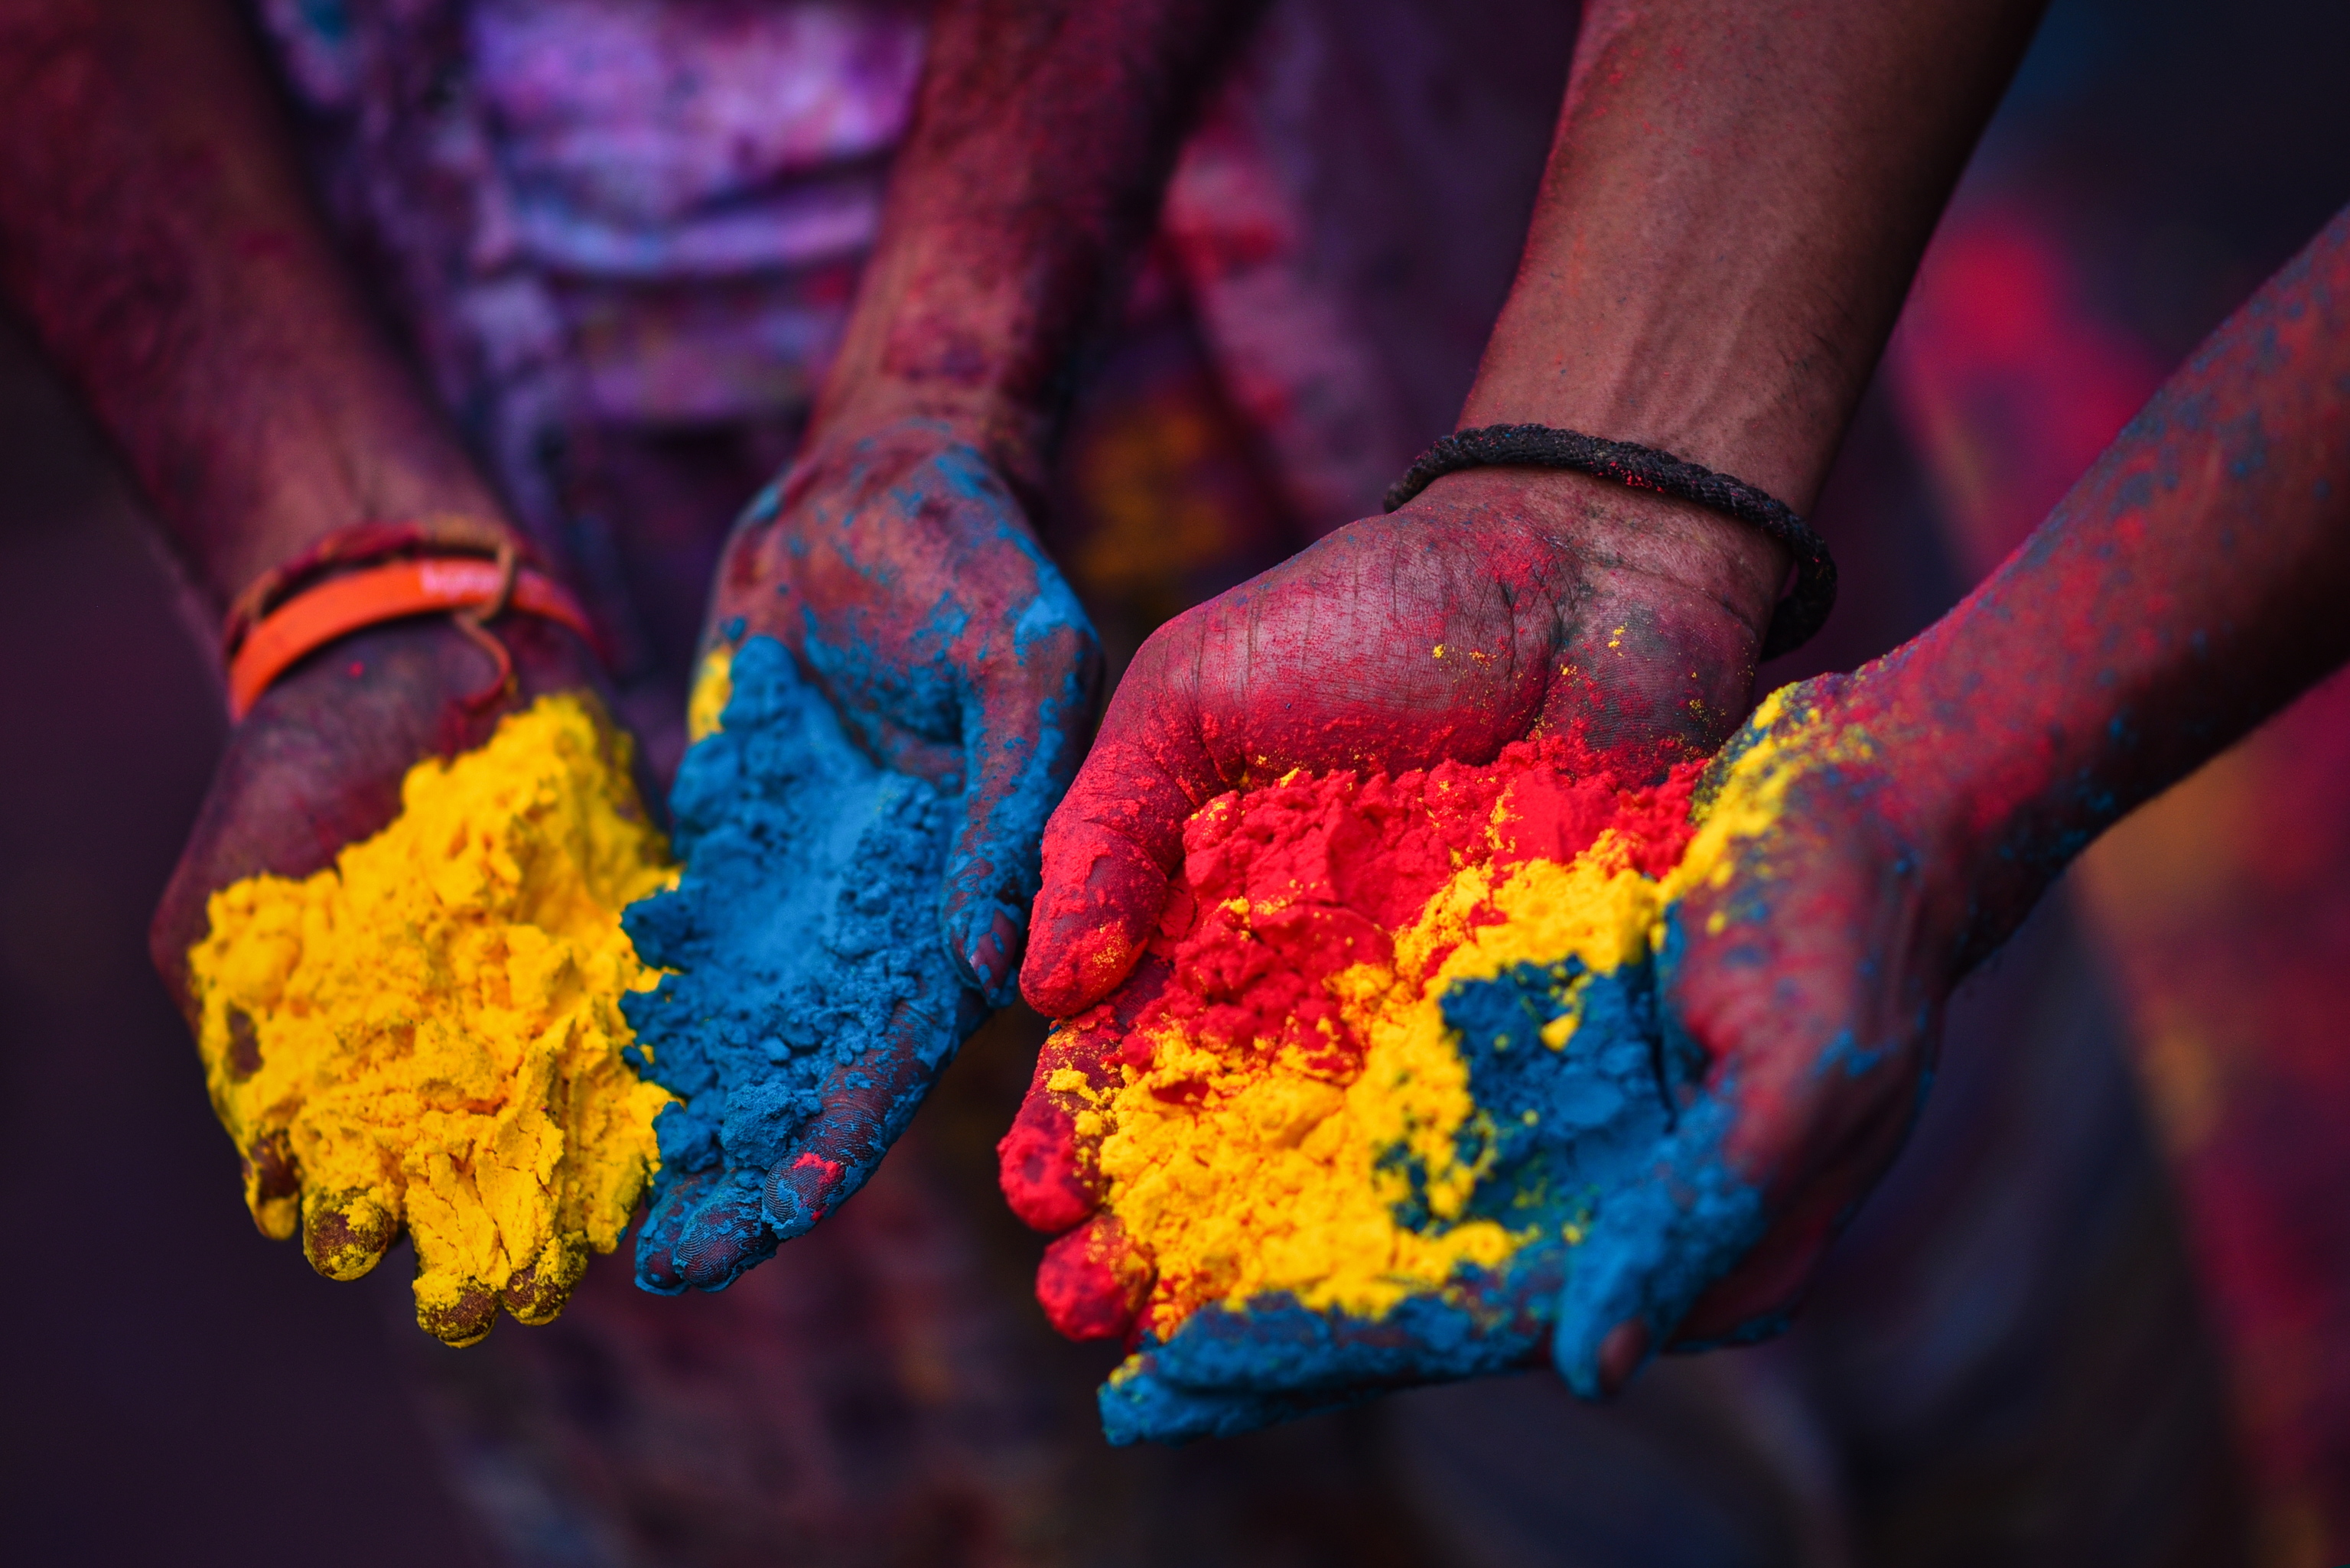 Detalle de los colores lanzados en el Holi.